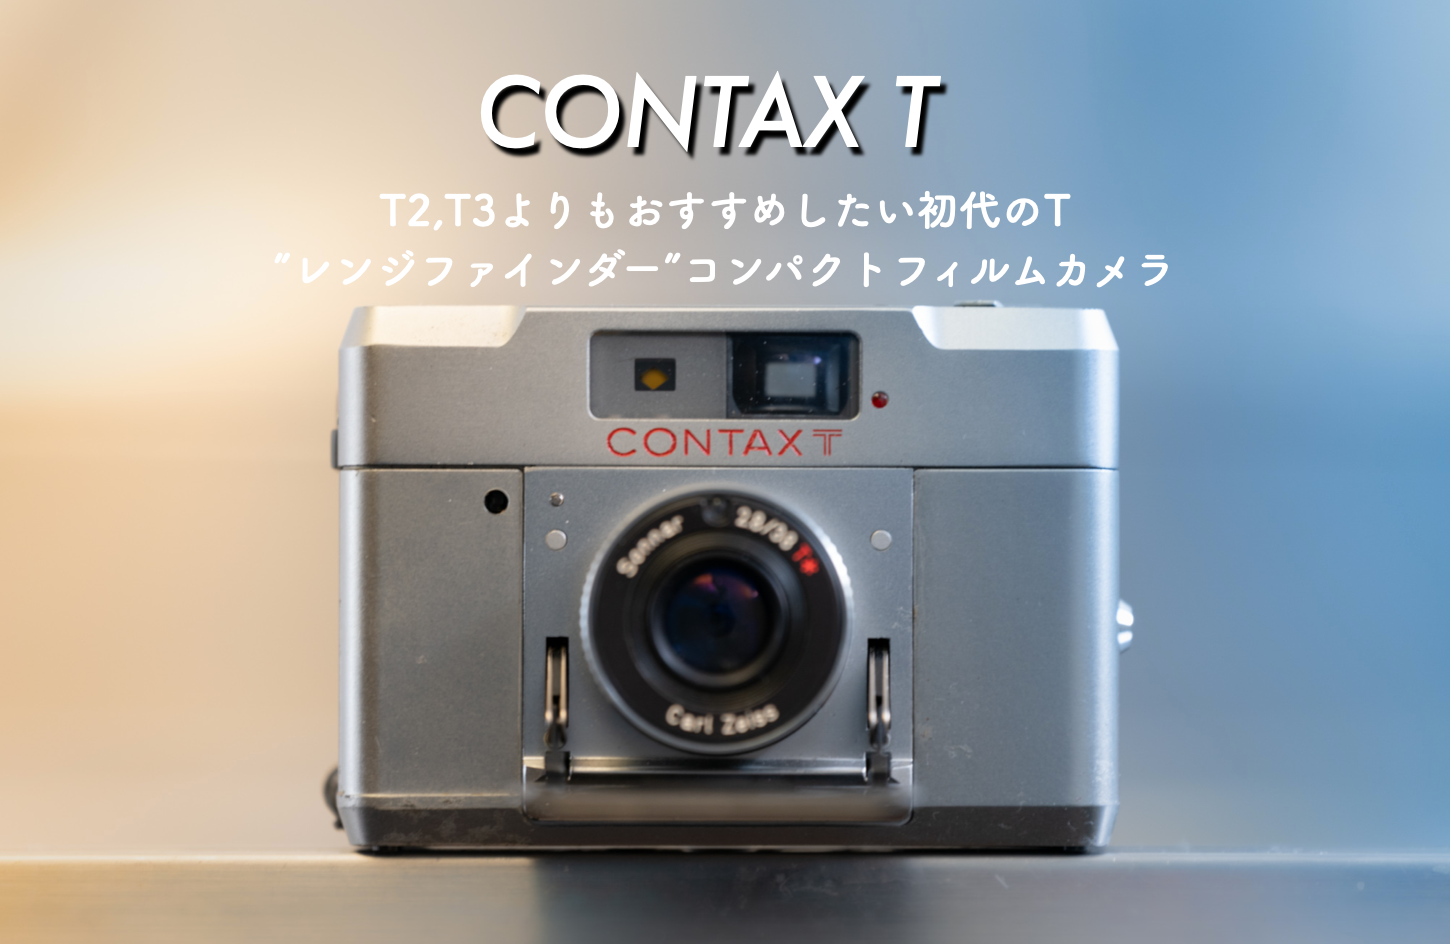 CONTAX T (初代)は隠れた銘”レンジファインダー”コンパクトフィルム 